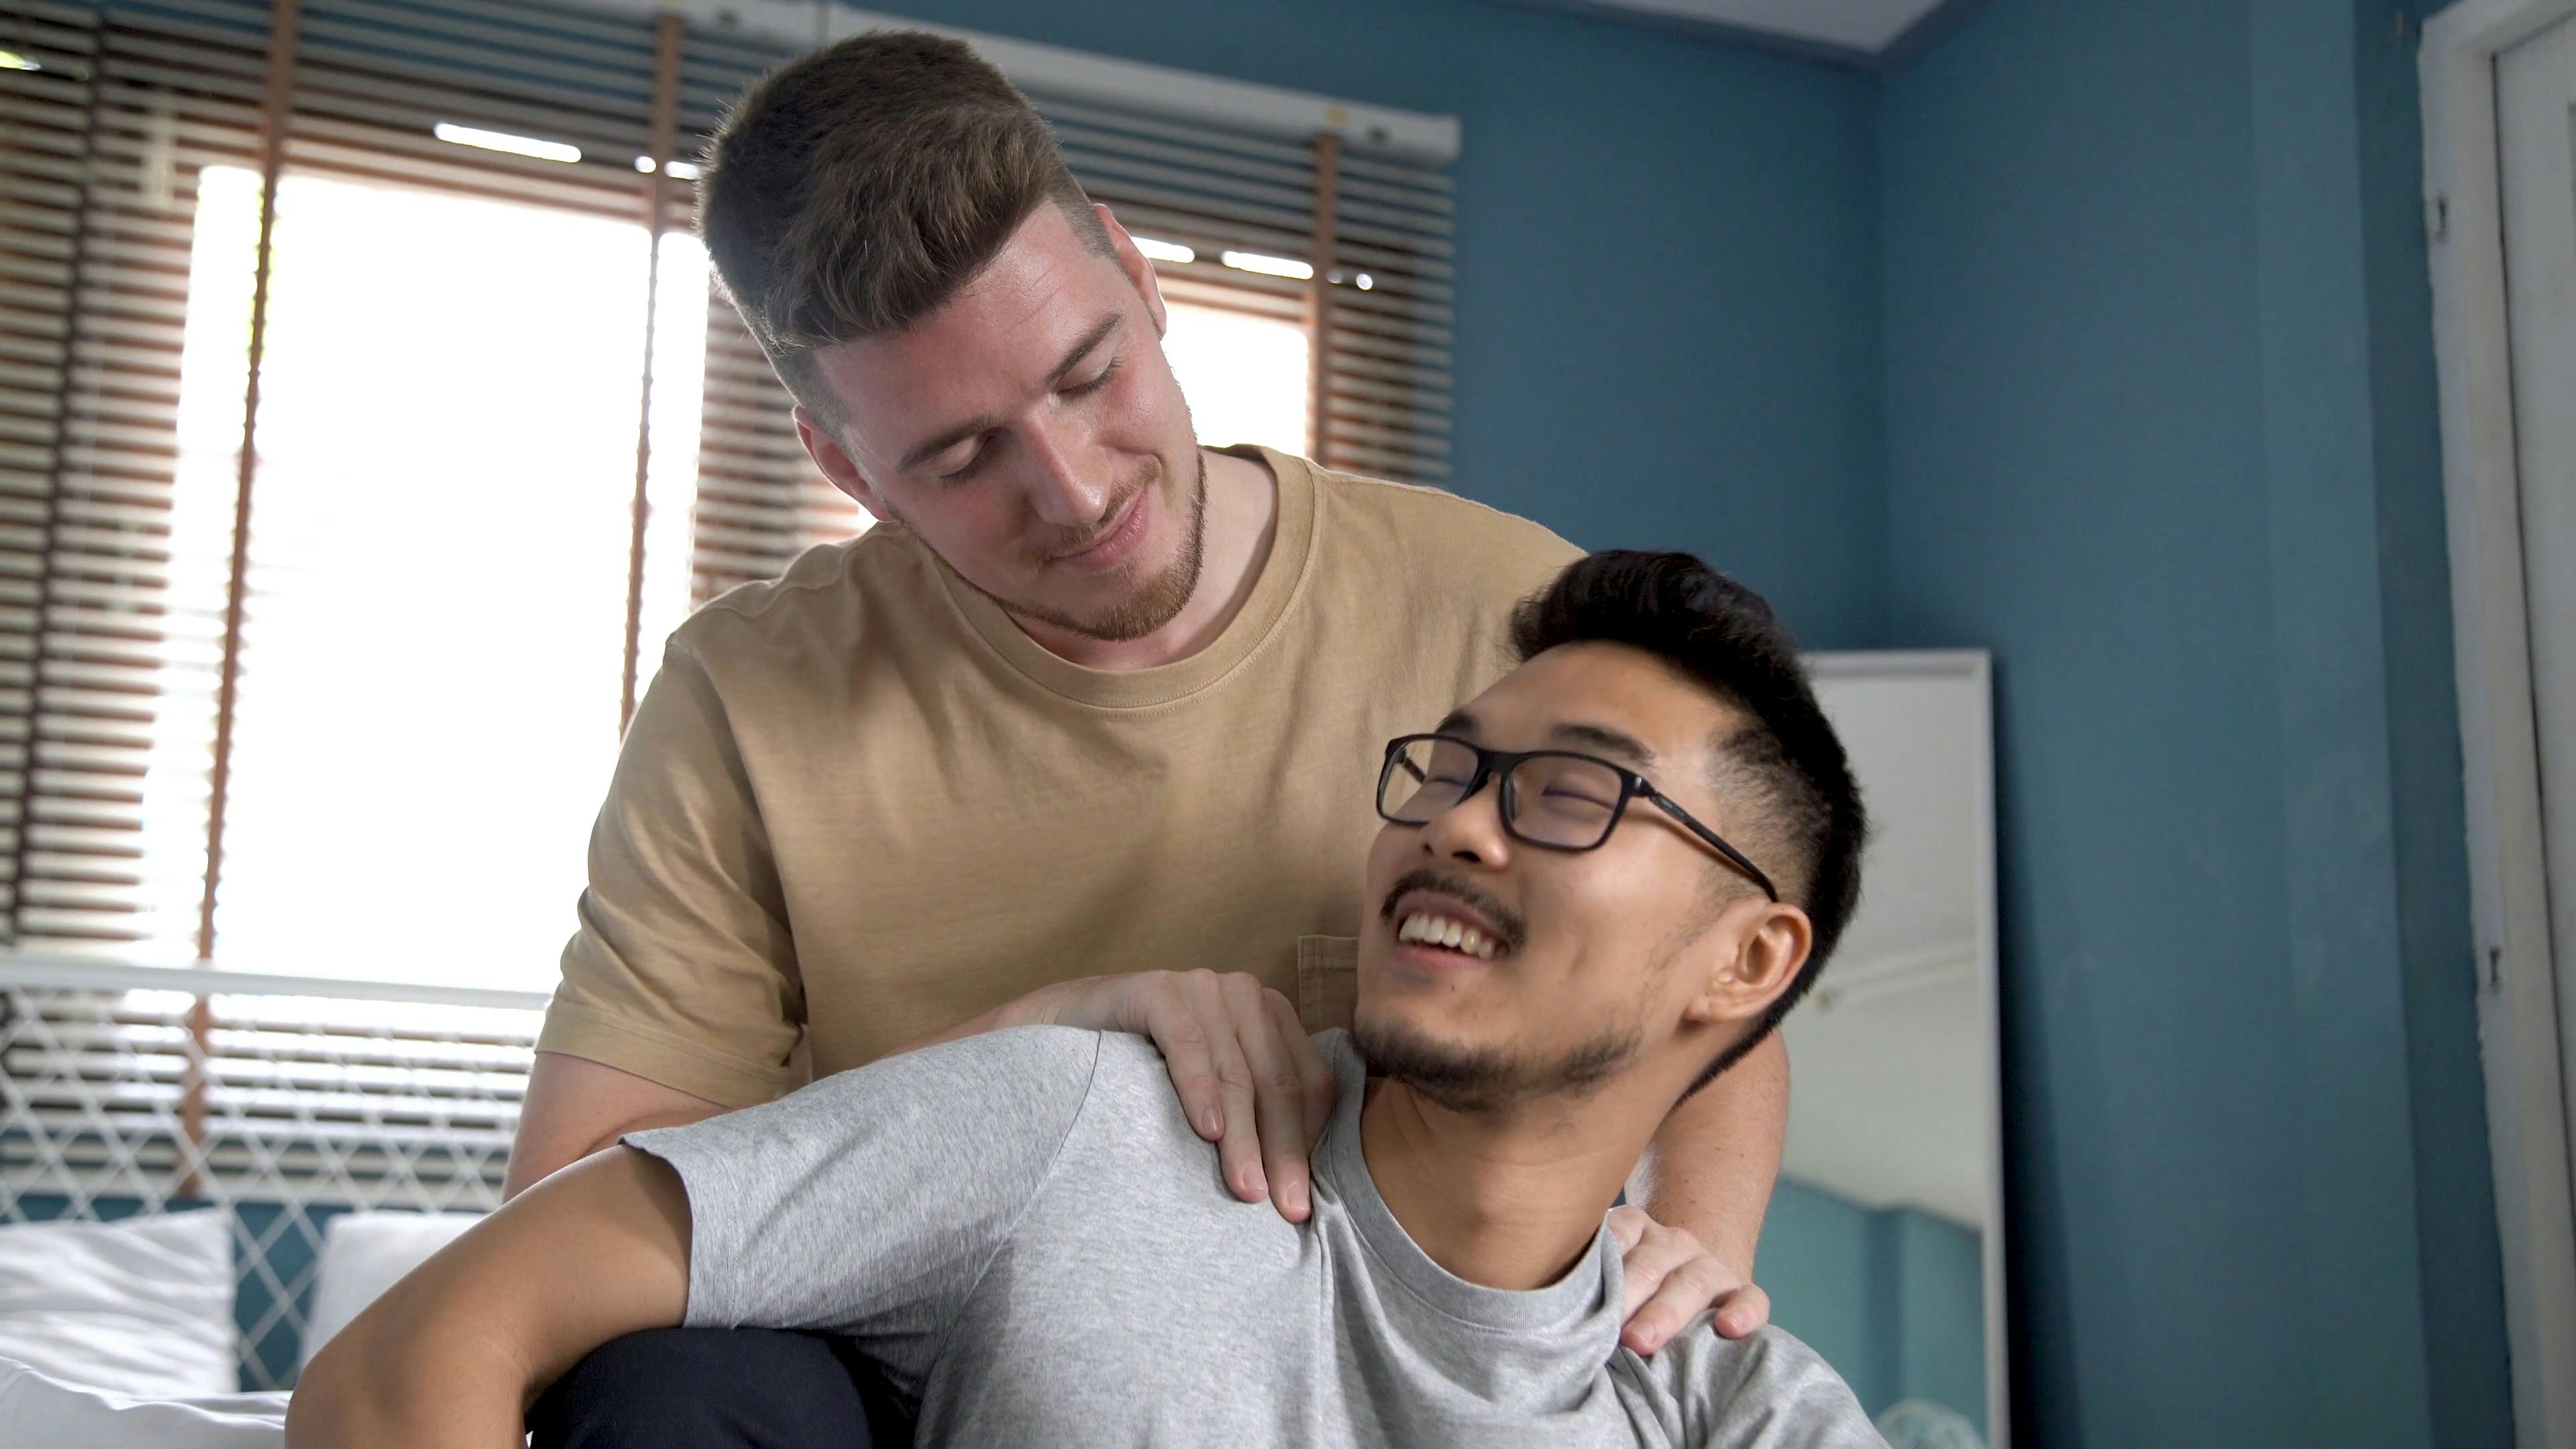 videos of gay men massage